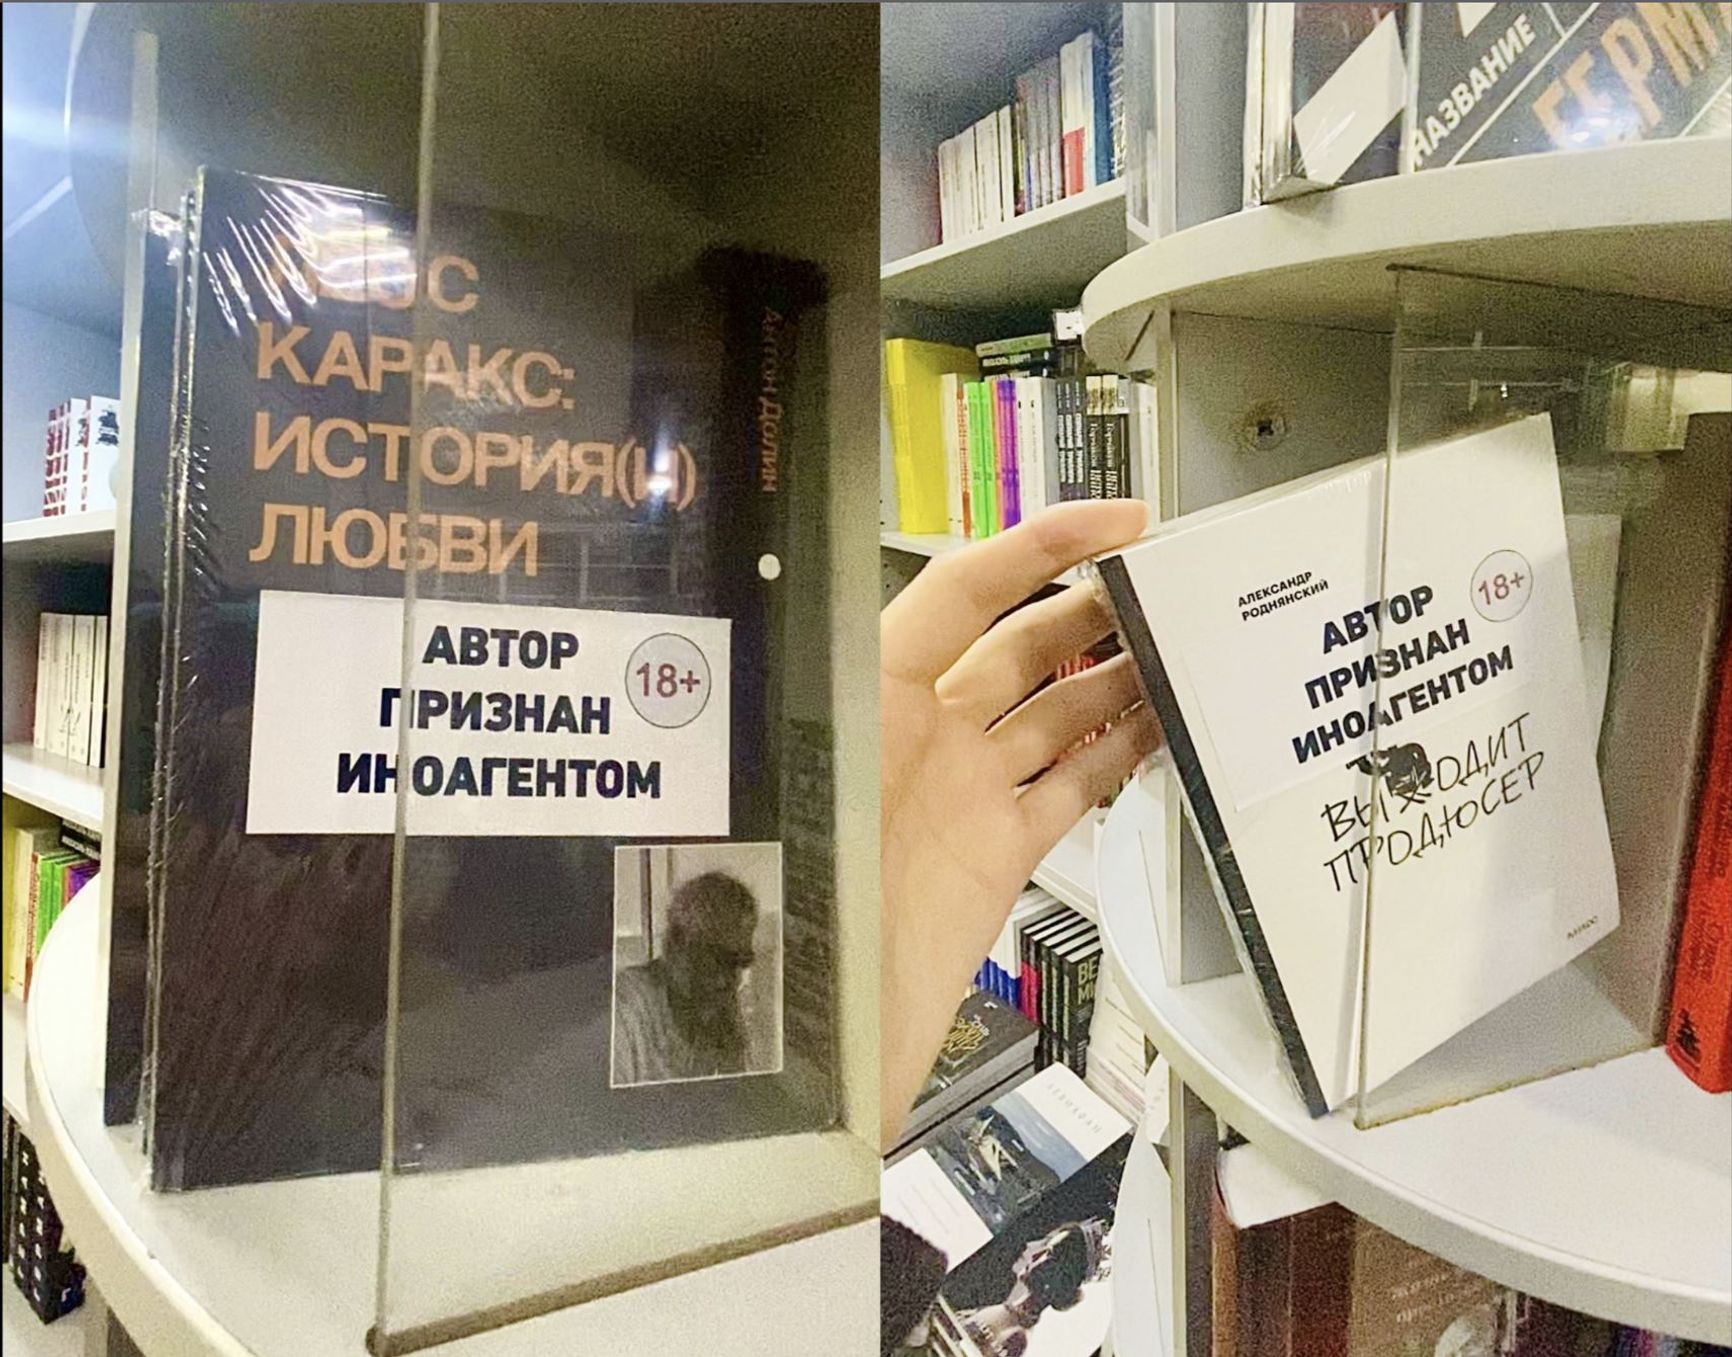 Moskva Bookstore on Tverskaya Street 